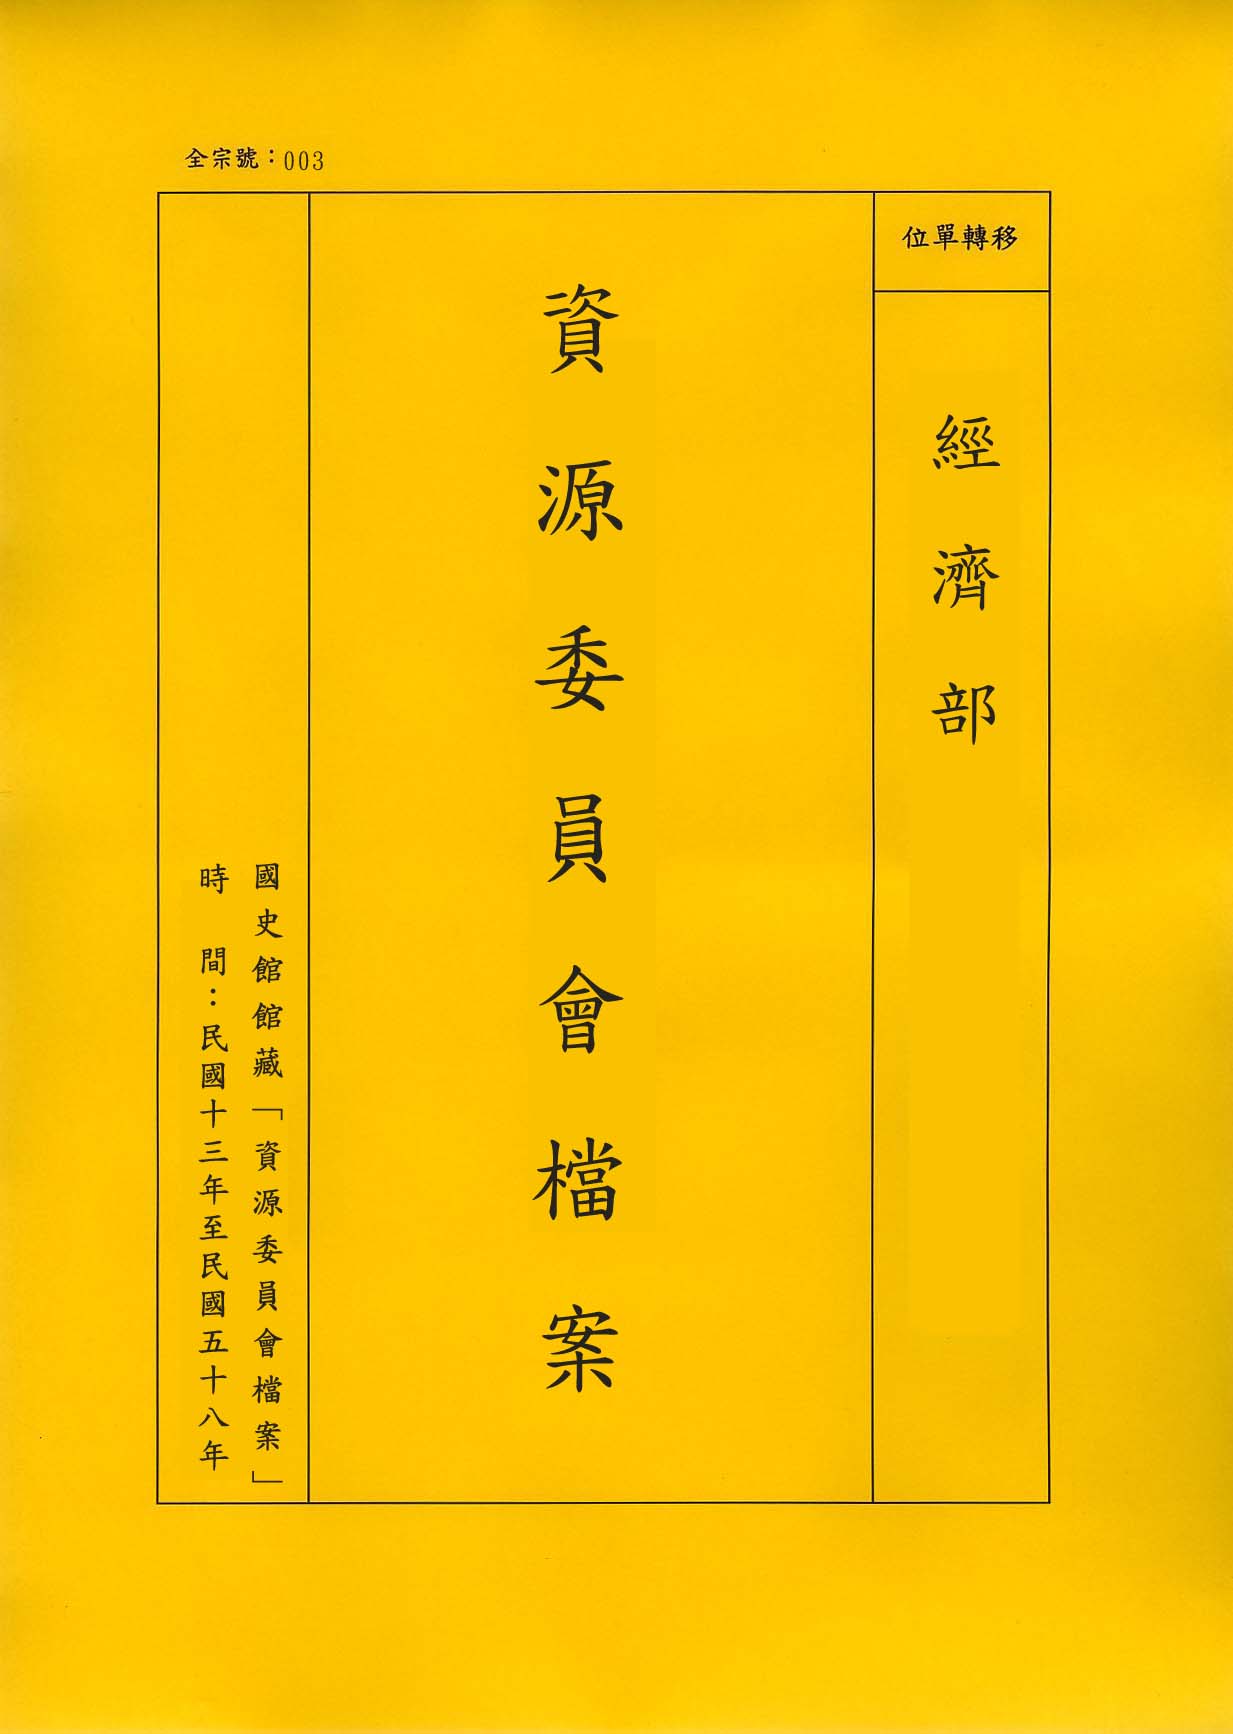 卷名:天津紙漿造紙公司組織案(003-010101-0314)